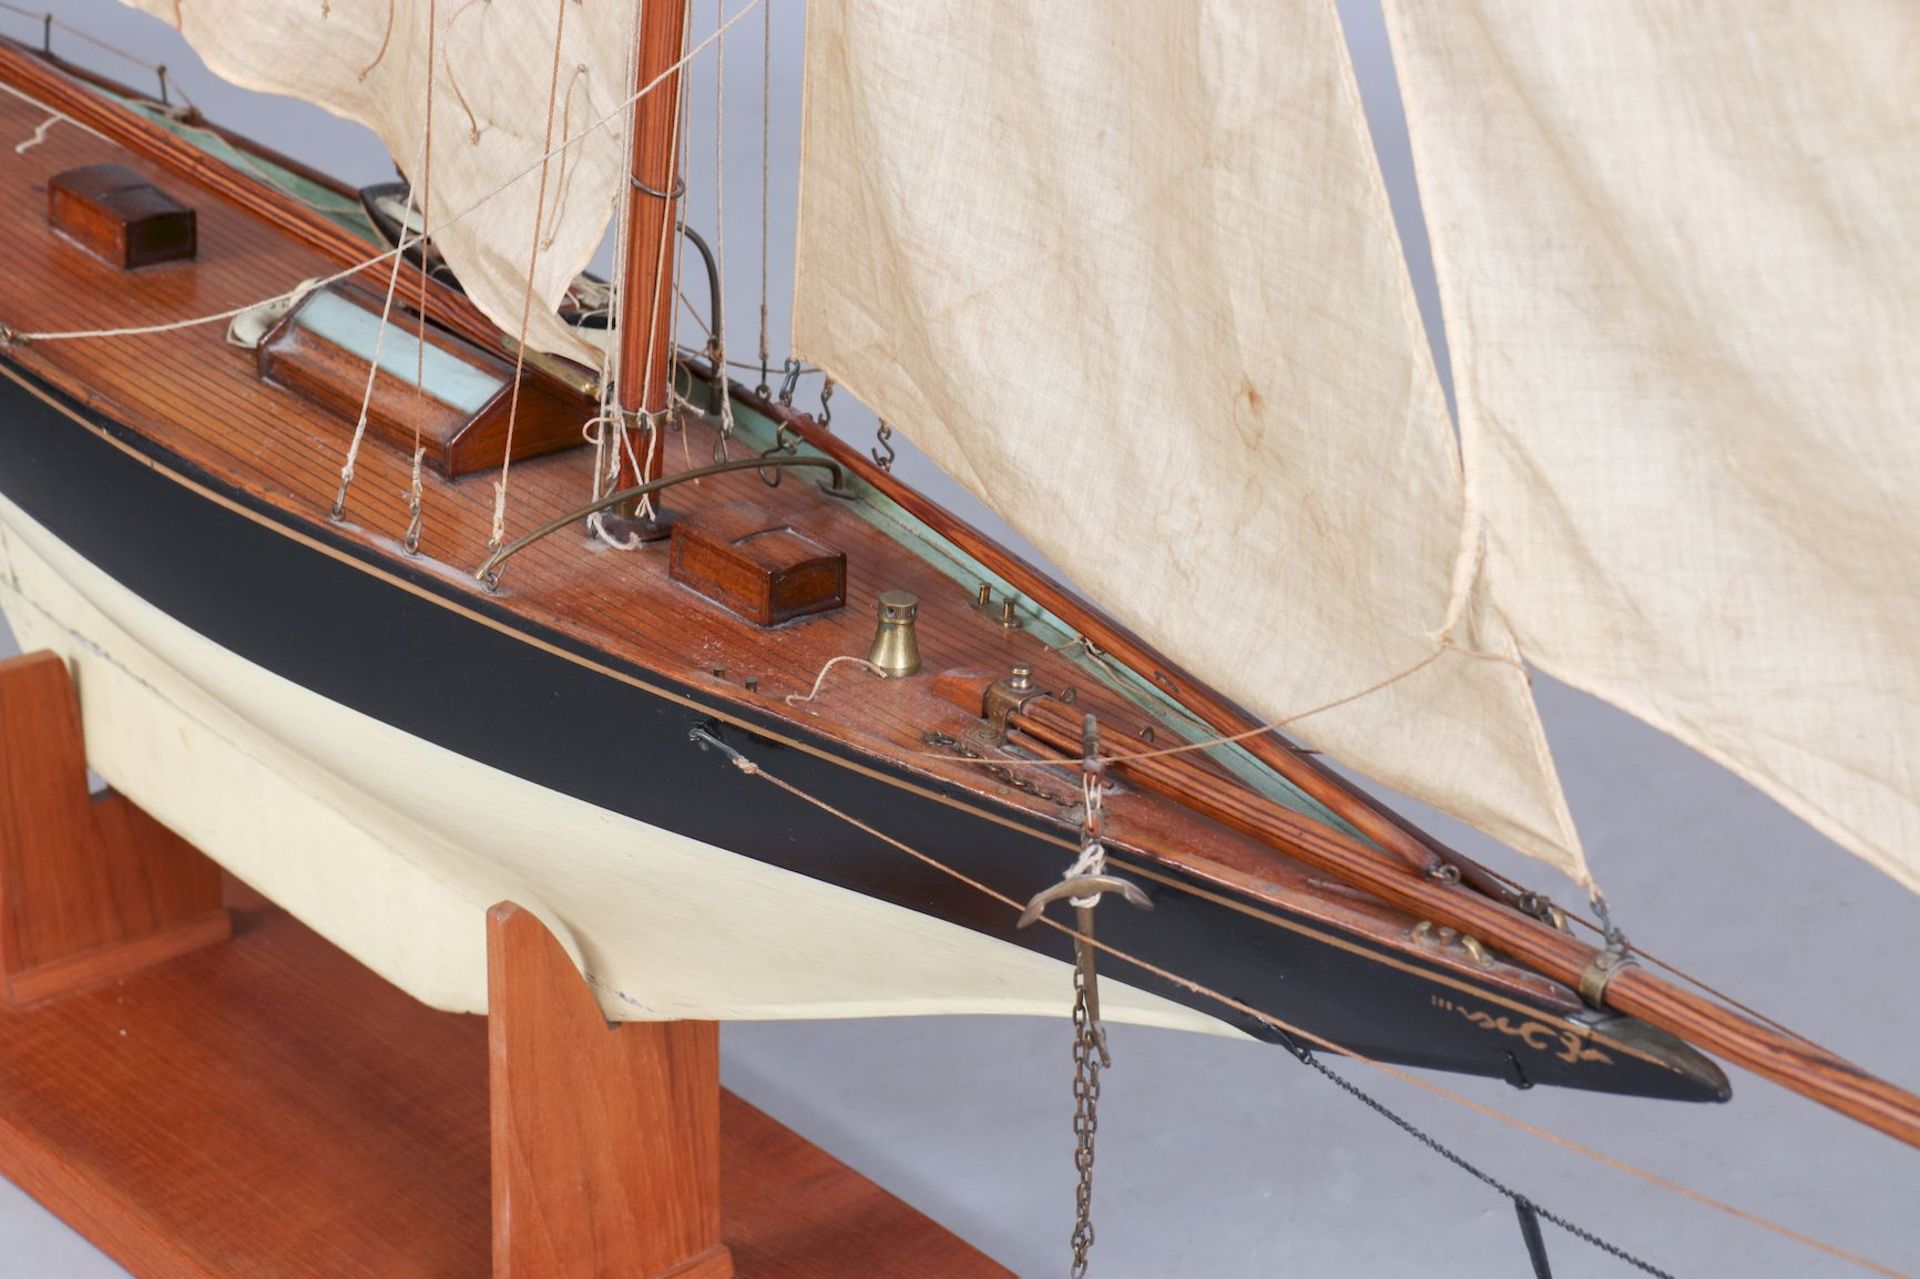 Modell eines frühen Segelschiffes ¨Yacht¨ - Bild 2 aus 5